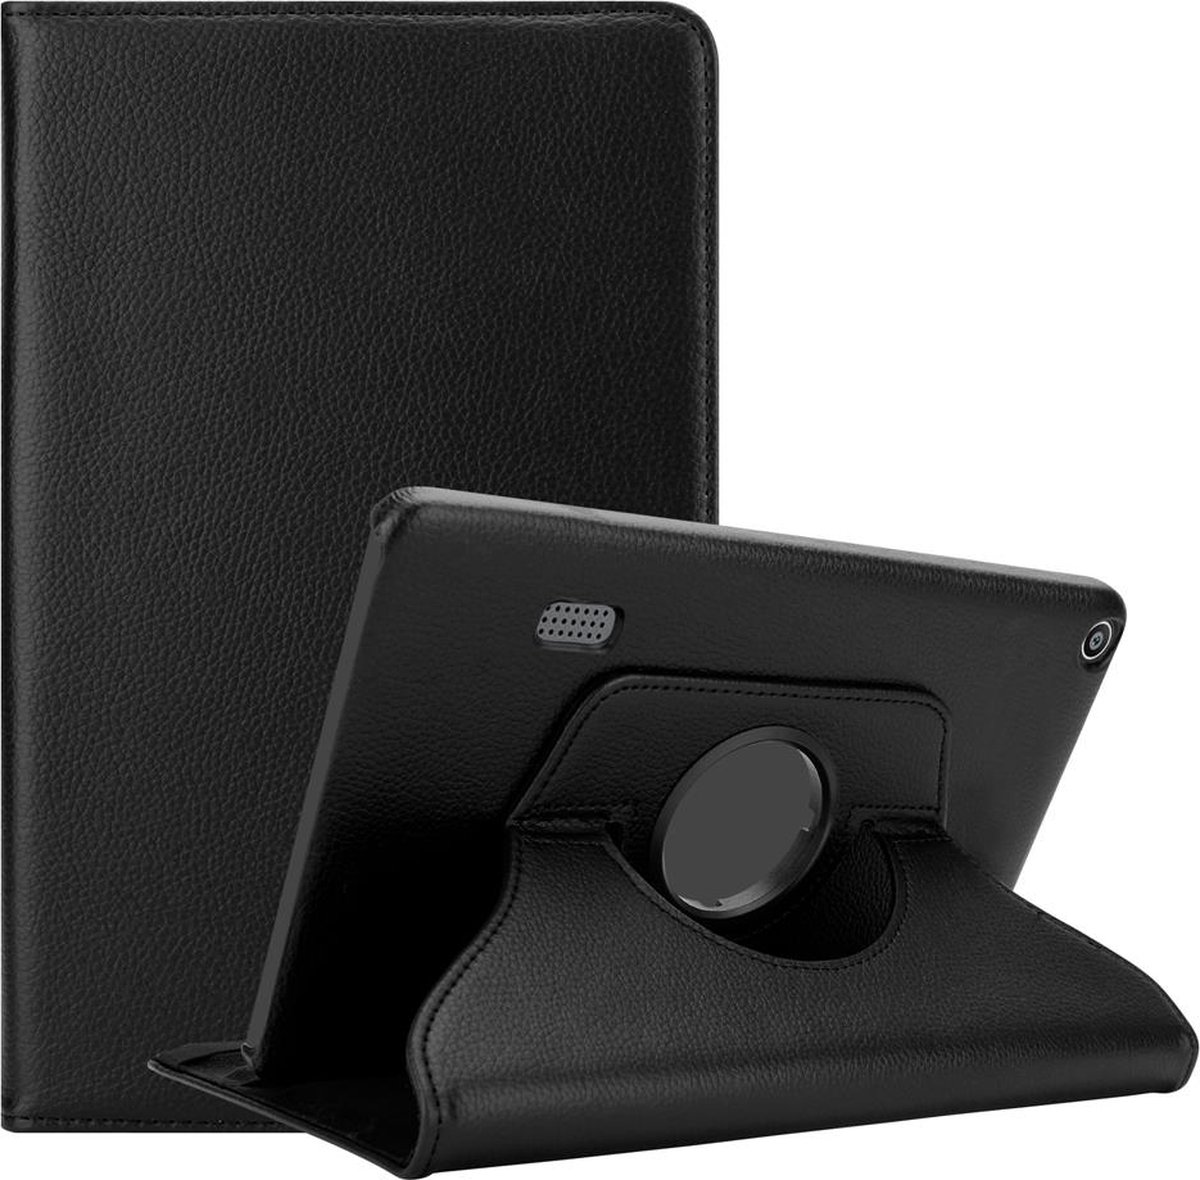 Cadorabo Tablet hoes voor Huawei MediaPad T3 7 (7.0 Zoll) in OUDERLING ZWART - Beschermhoes ZONDER auto Wake Up, met stand functie en elastische band sluiting